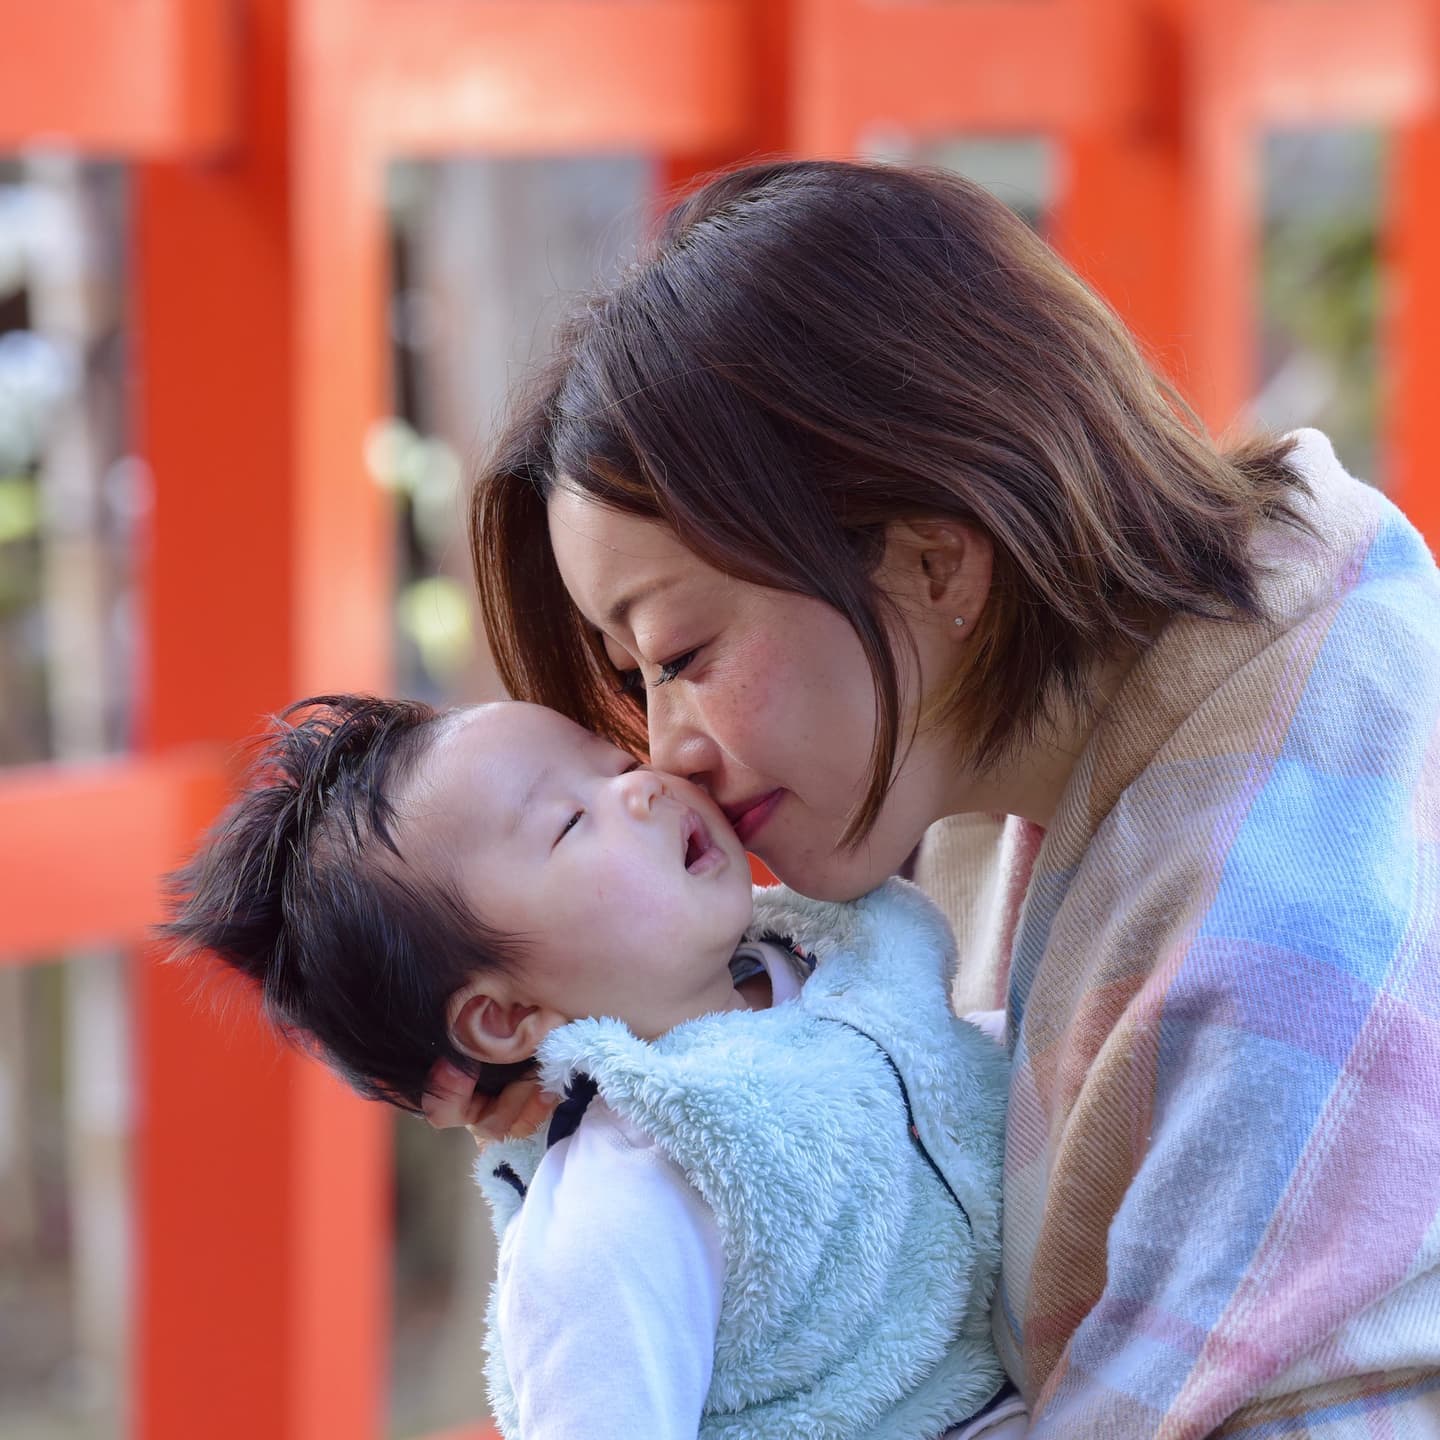 吉田神社でお宮参りの赤ちゃんと兄弟と家族